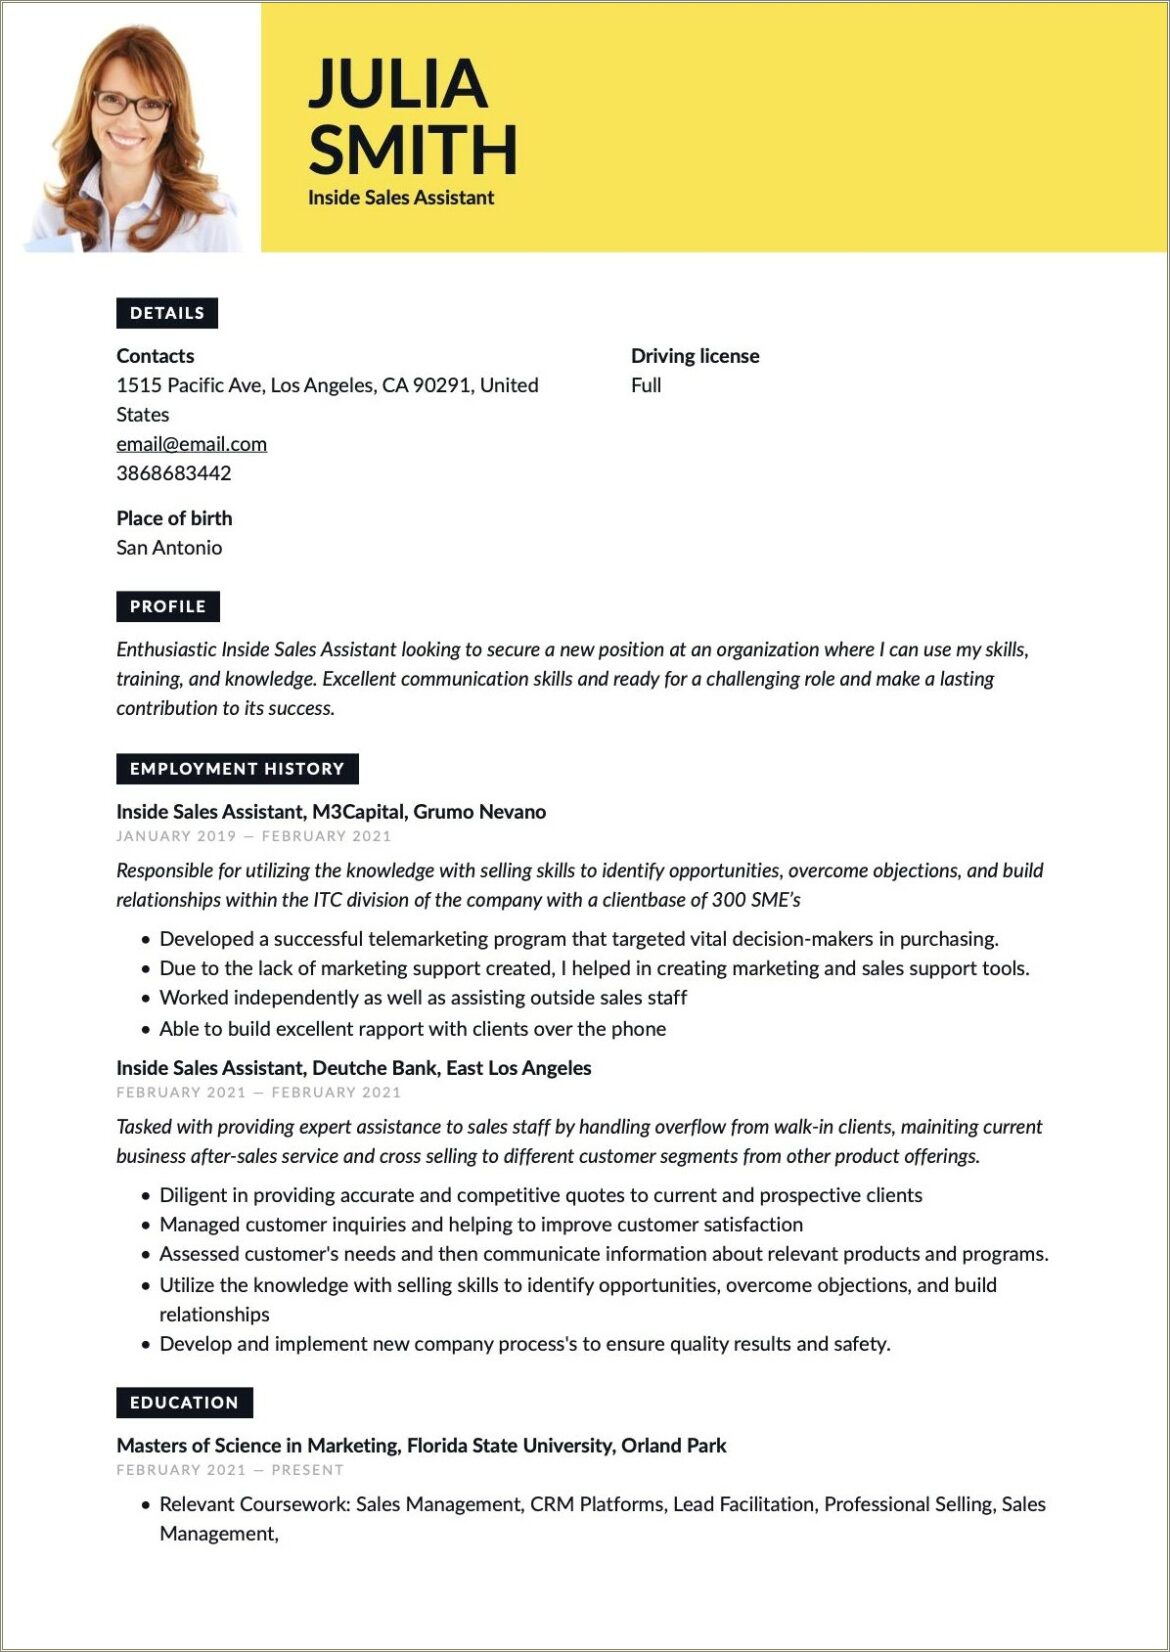 Sample Resume For Inside Sales Position